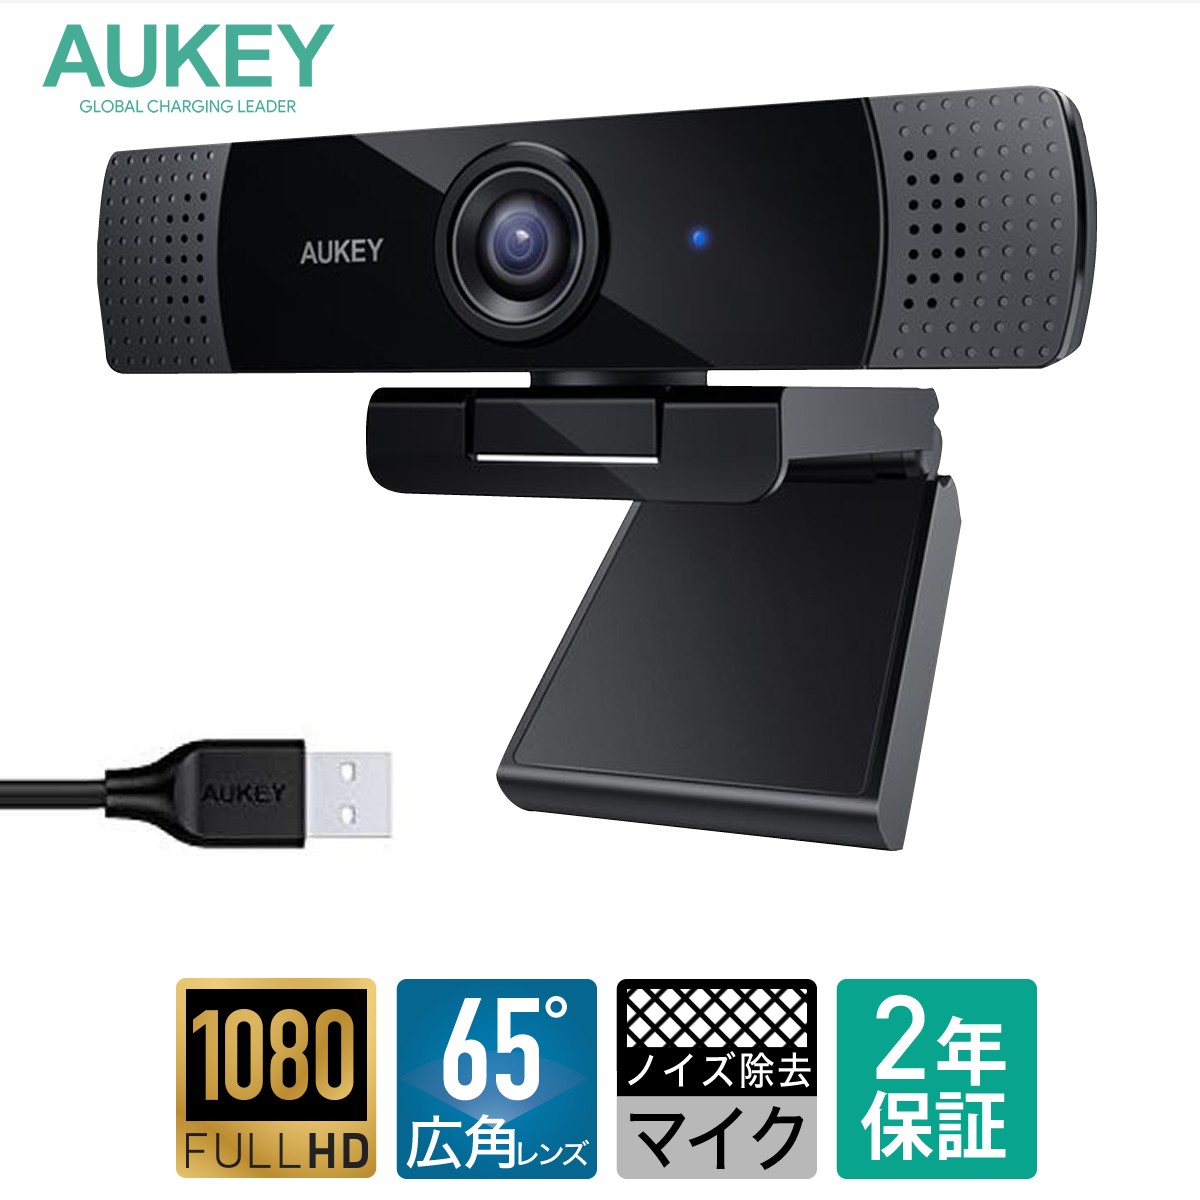  цена пересмотр веб-камера полный HD 1080p высокое разрешение Mike встроенный широкоугольный линзы шум удаление Mike AUKEYo- ключ PC-LM1E